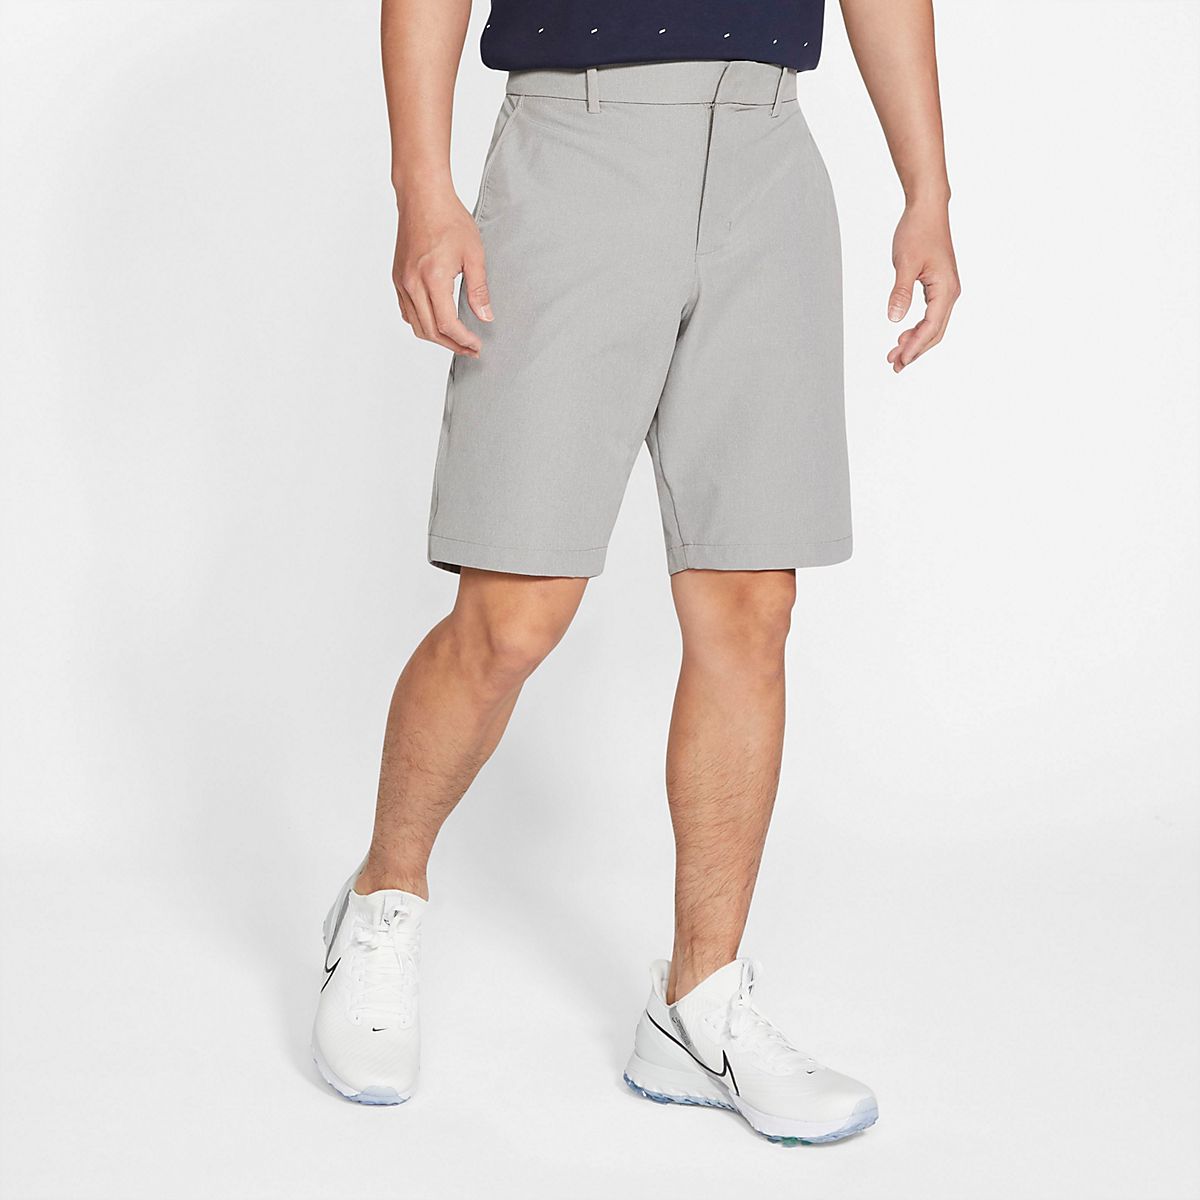 Nike Men's Flex Hybrid Golf Shorts | Free Shipping at Academy